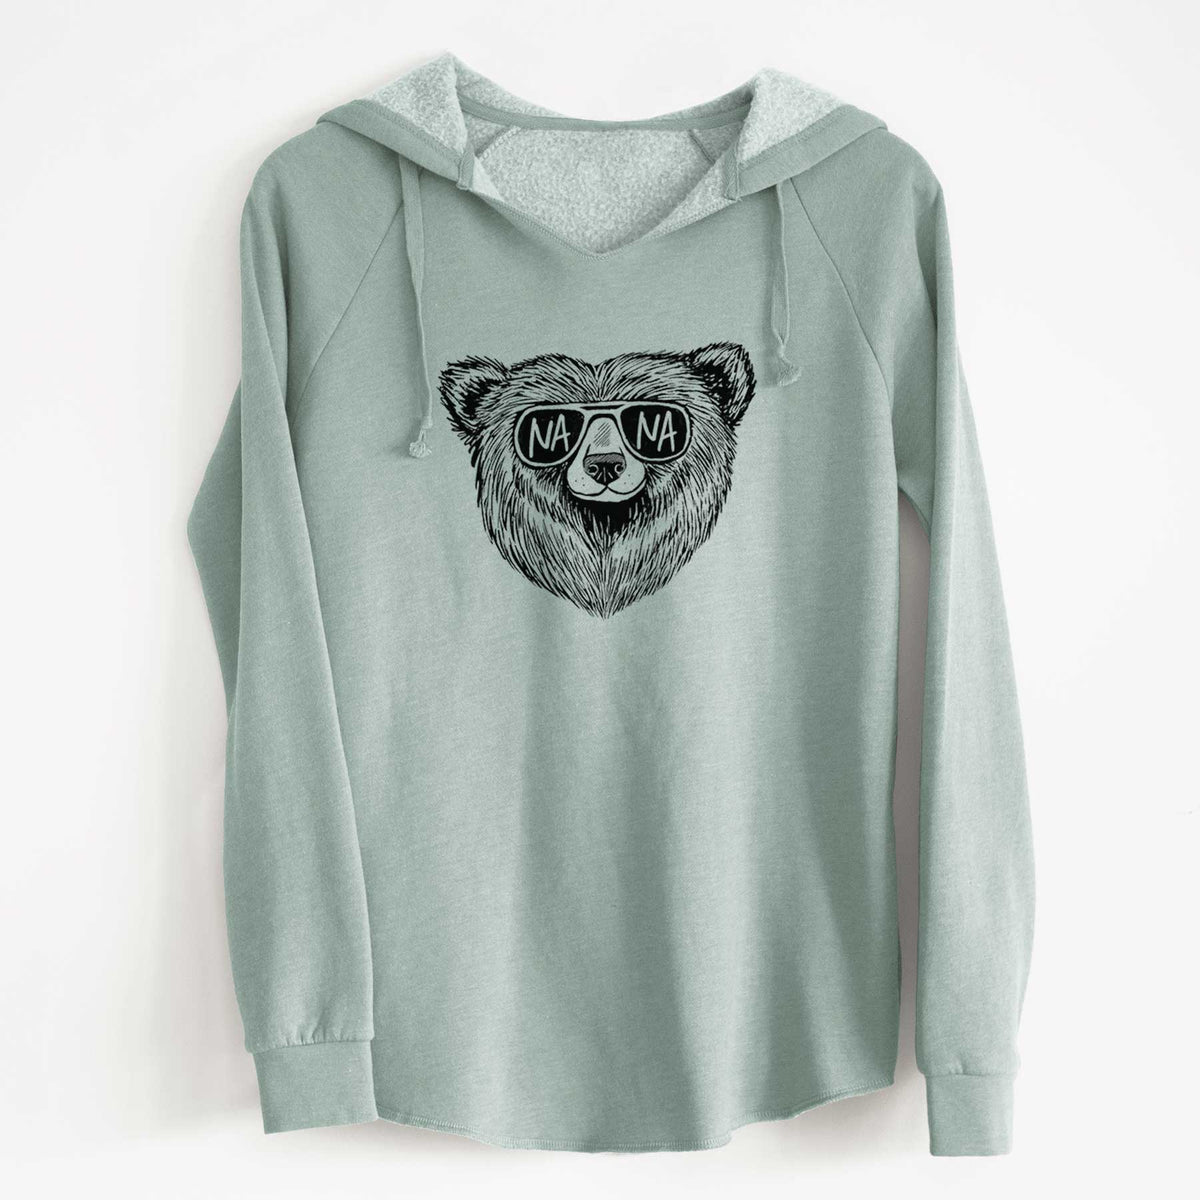 Nana Bear - Nana Glasses - Cali Wave Hooded Sweatshirt